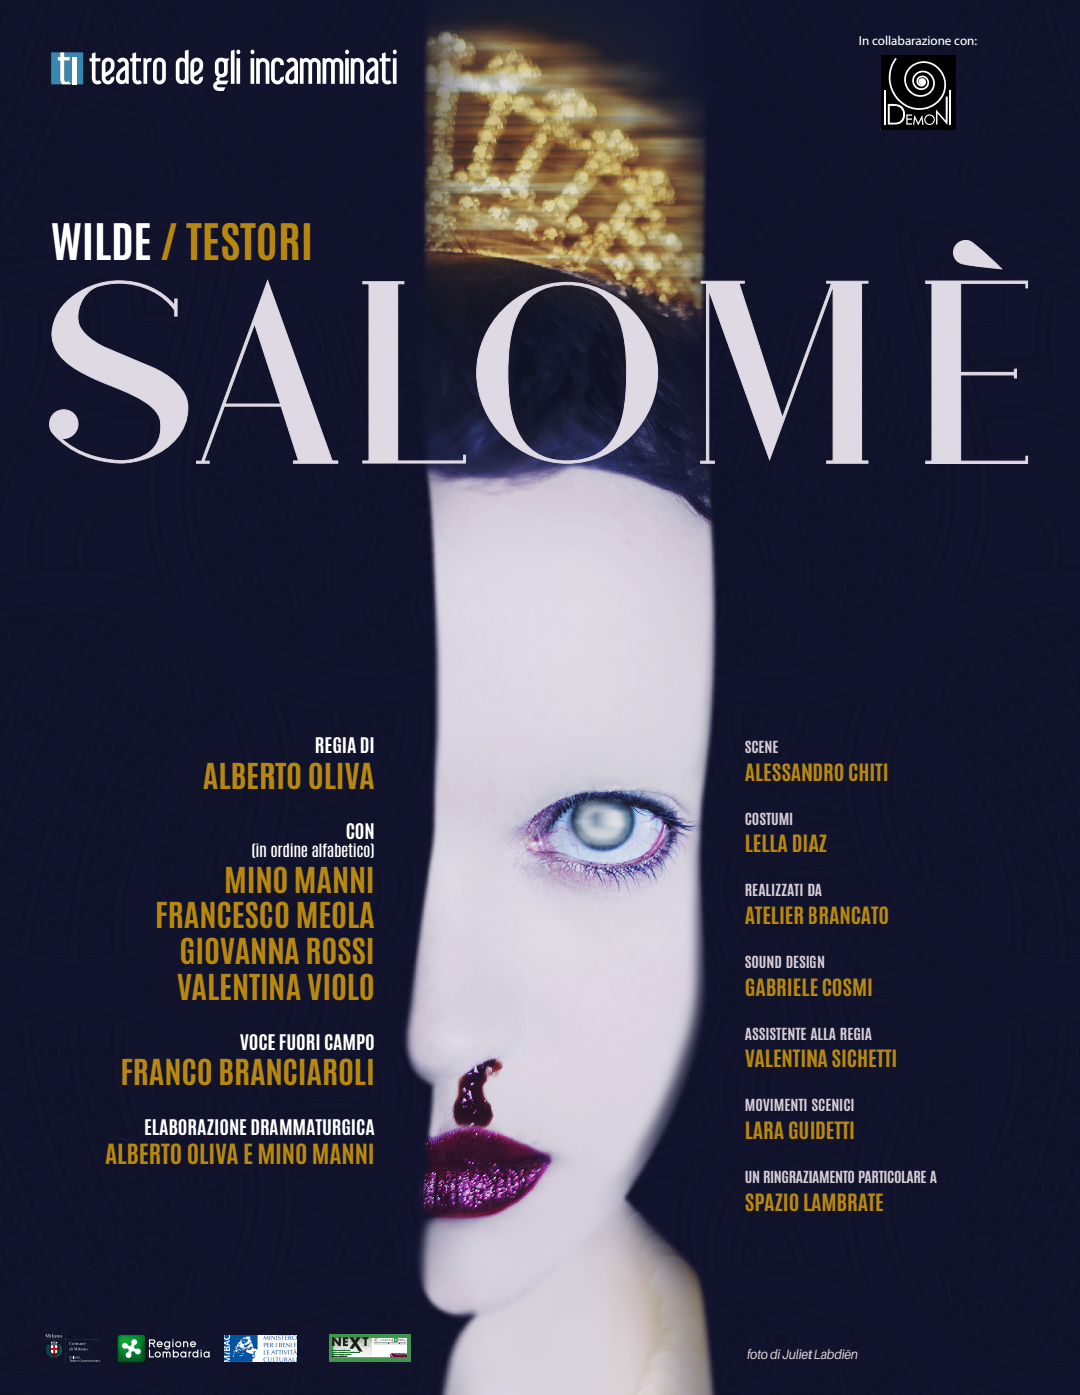 Al Teatro Litta, la Salomè di Oscar Wilde|Giovanni Testori